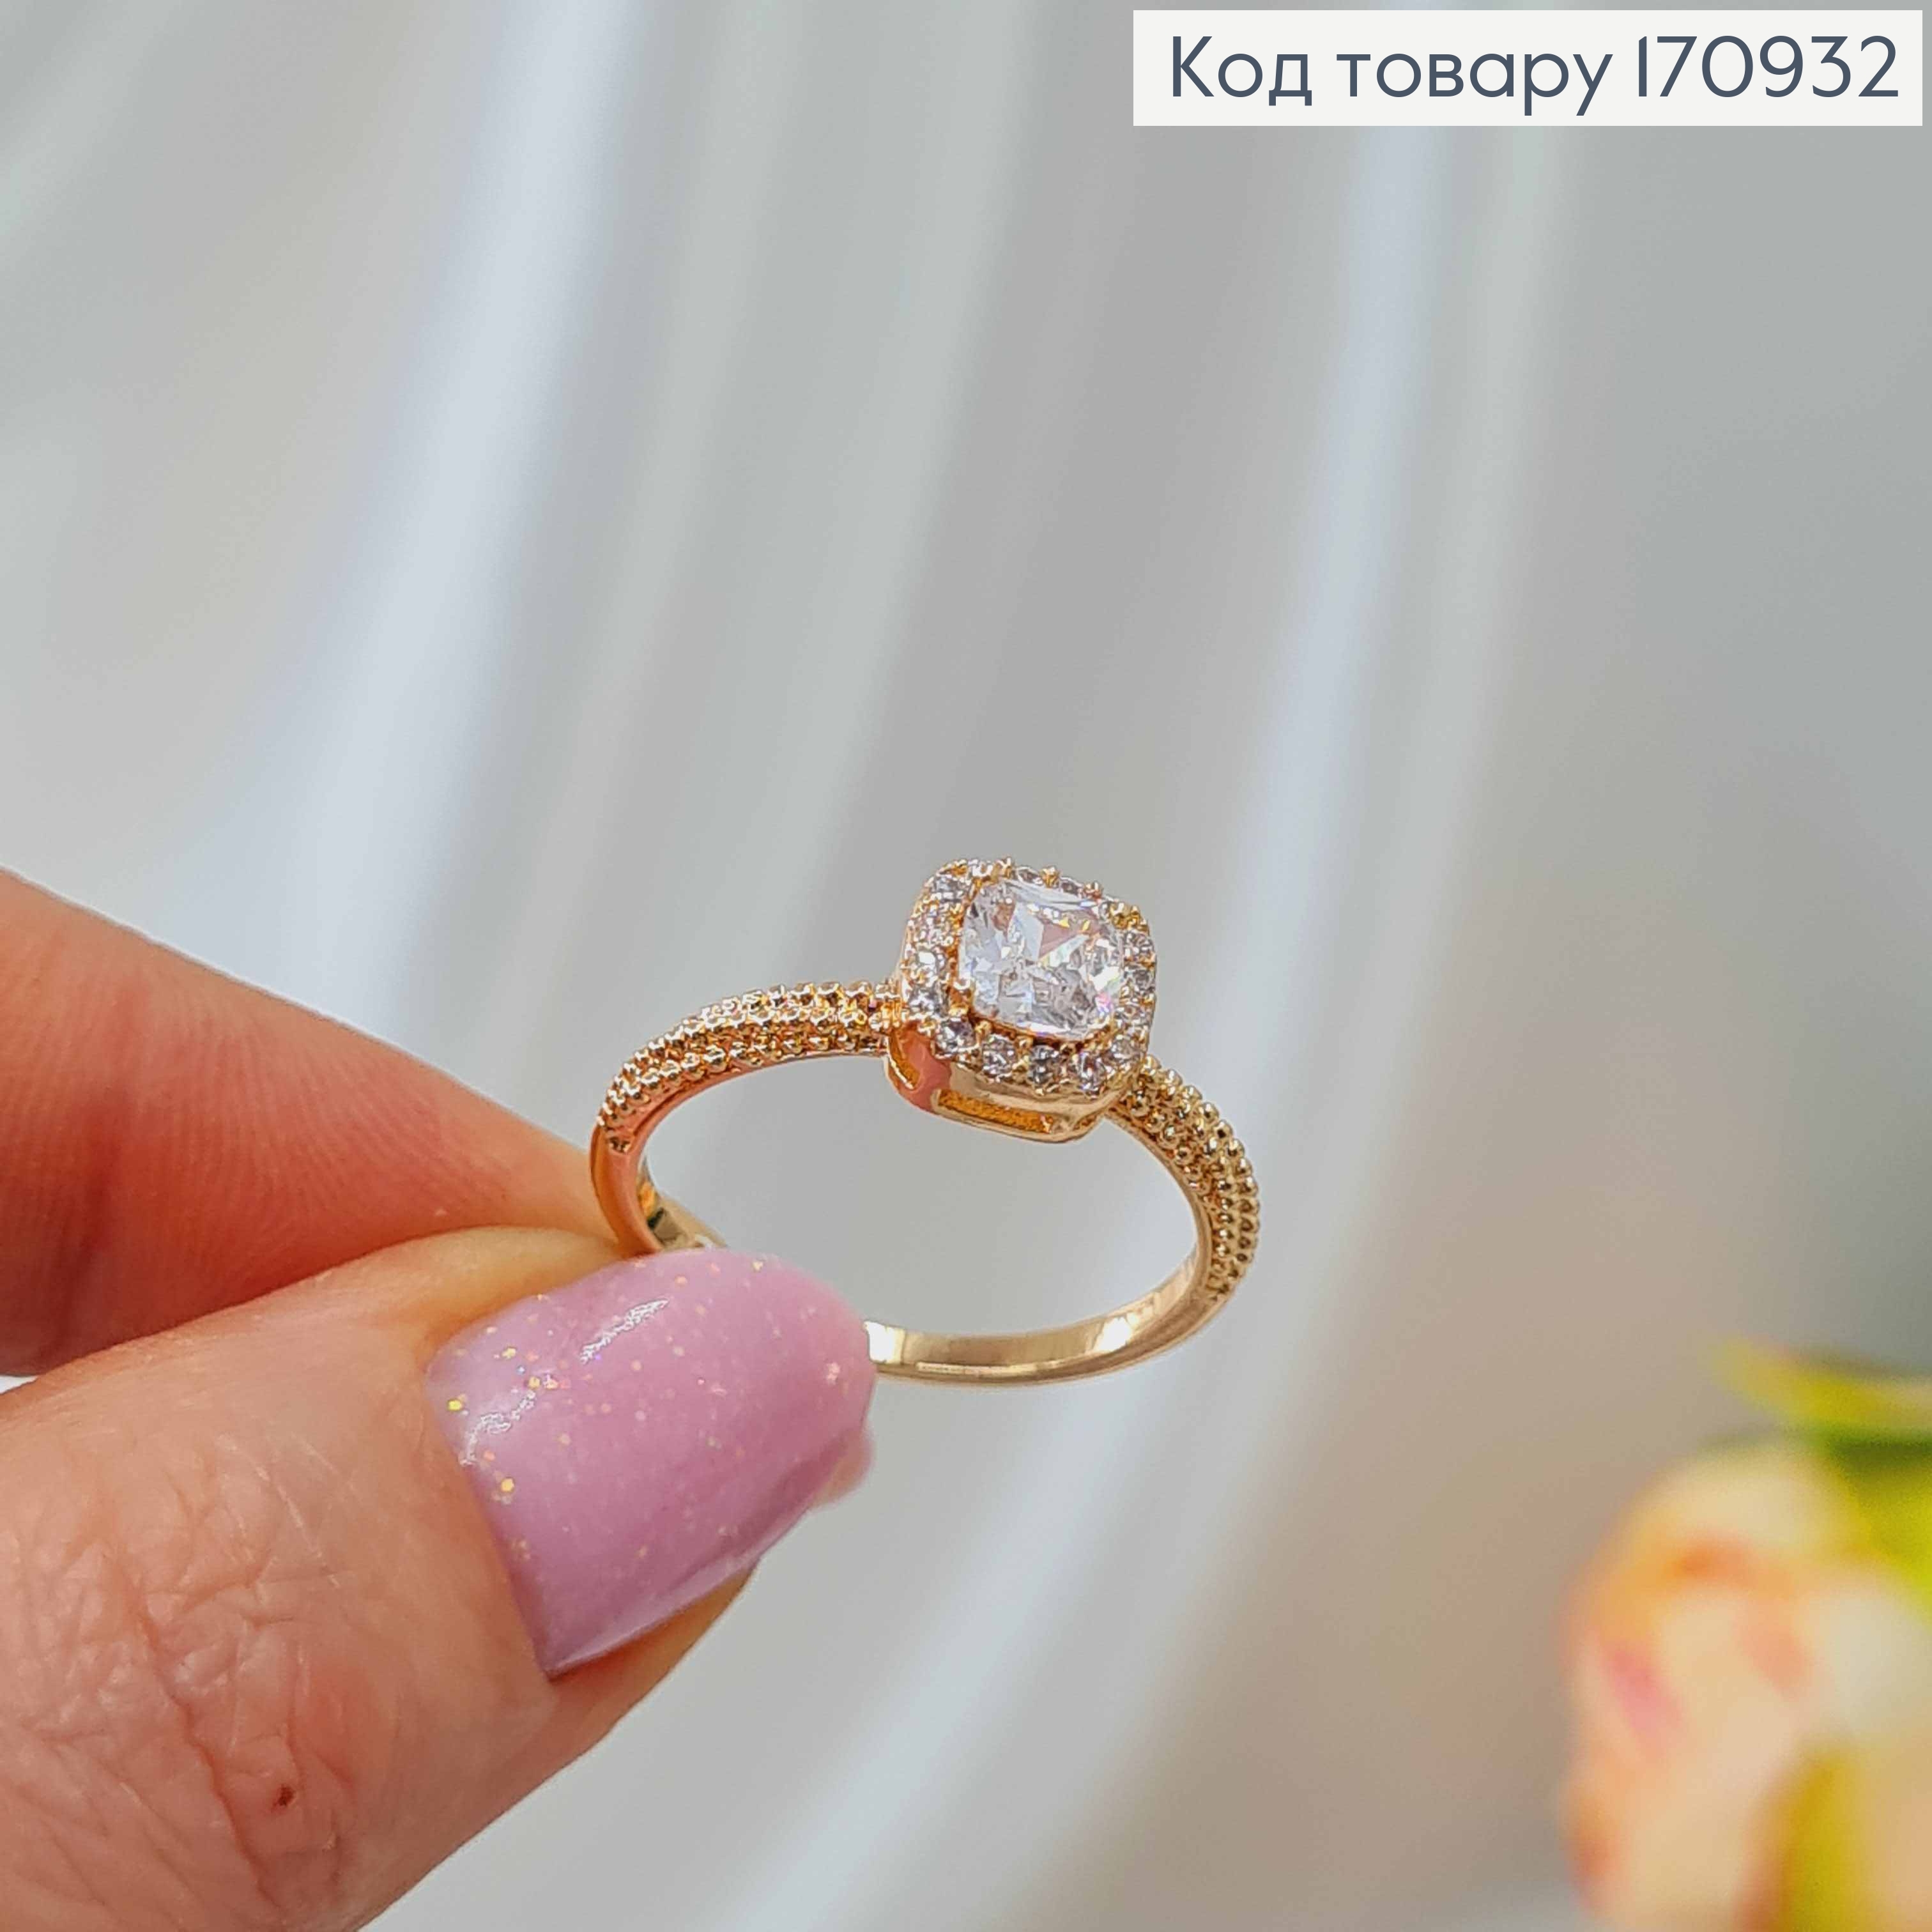 Кольцо, фактурное, С квадратным камнем в оправе, Xuping 18К 170932 фото 3